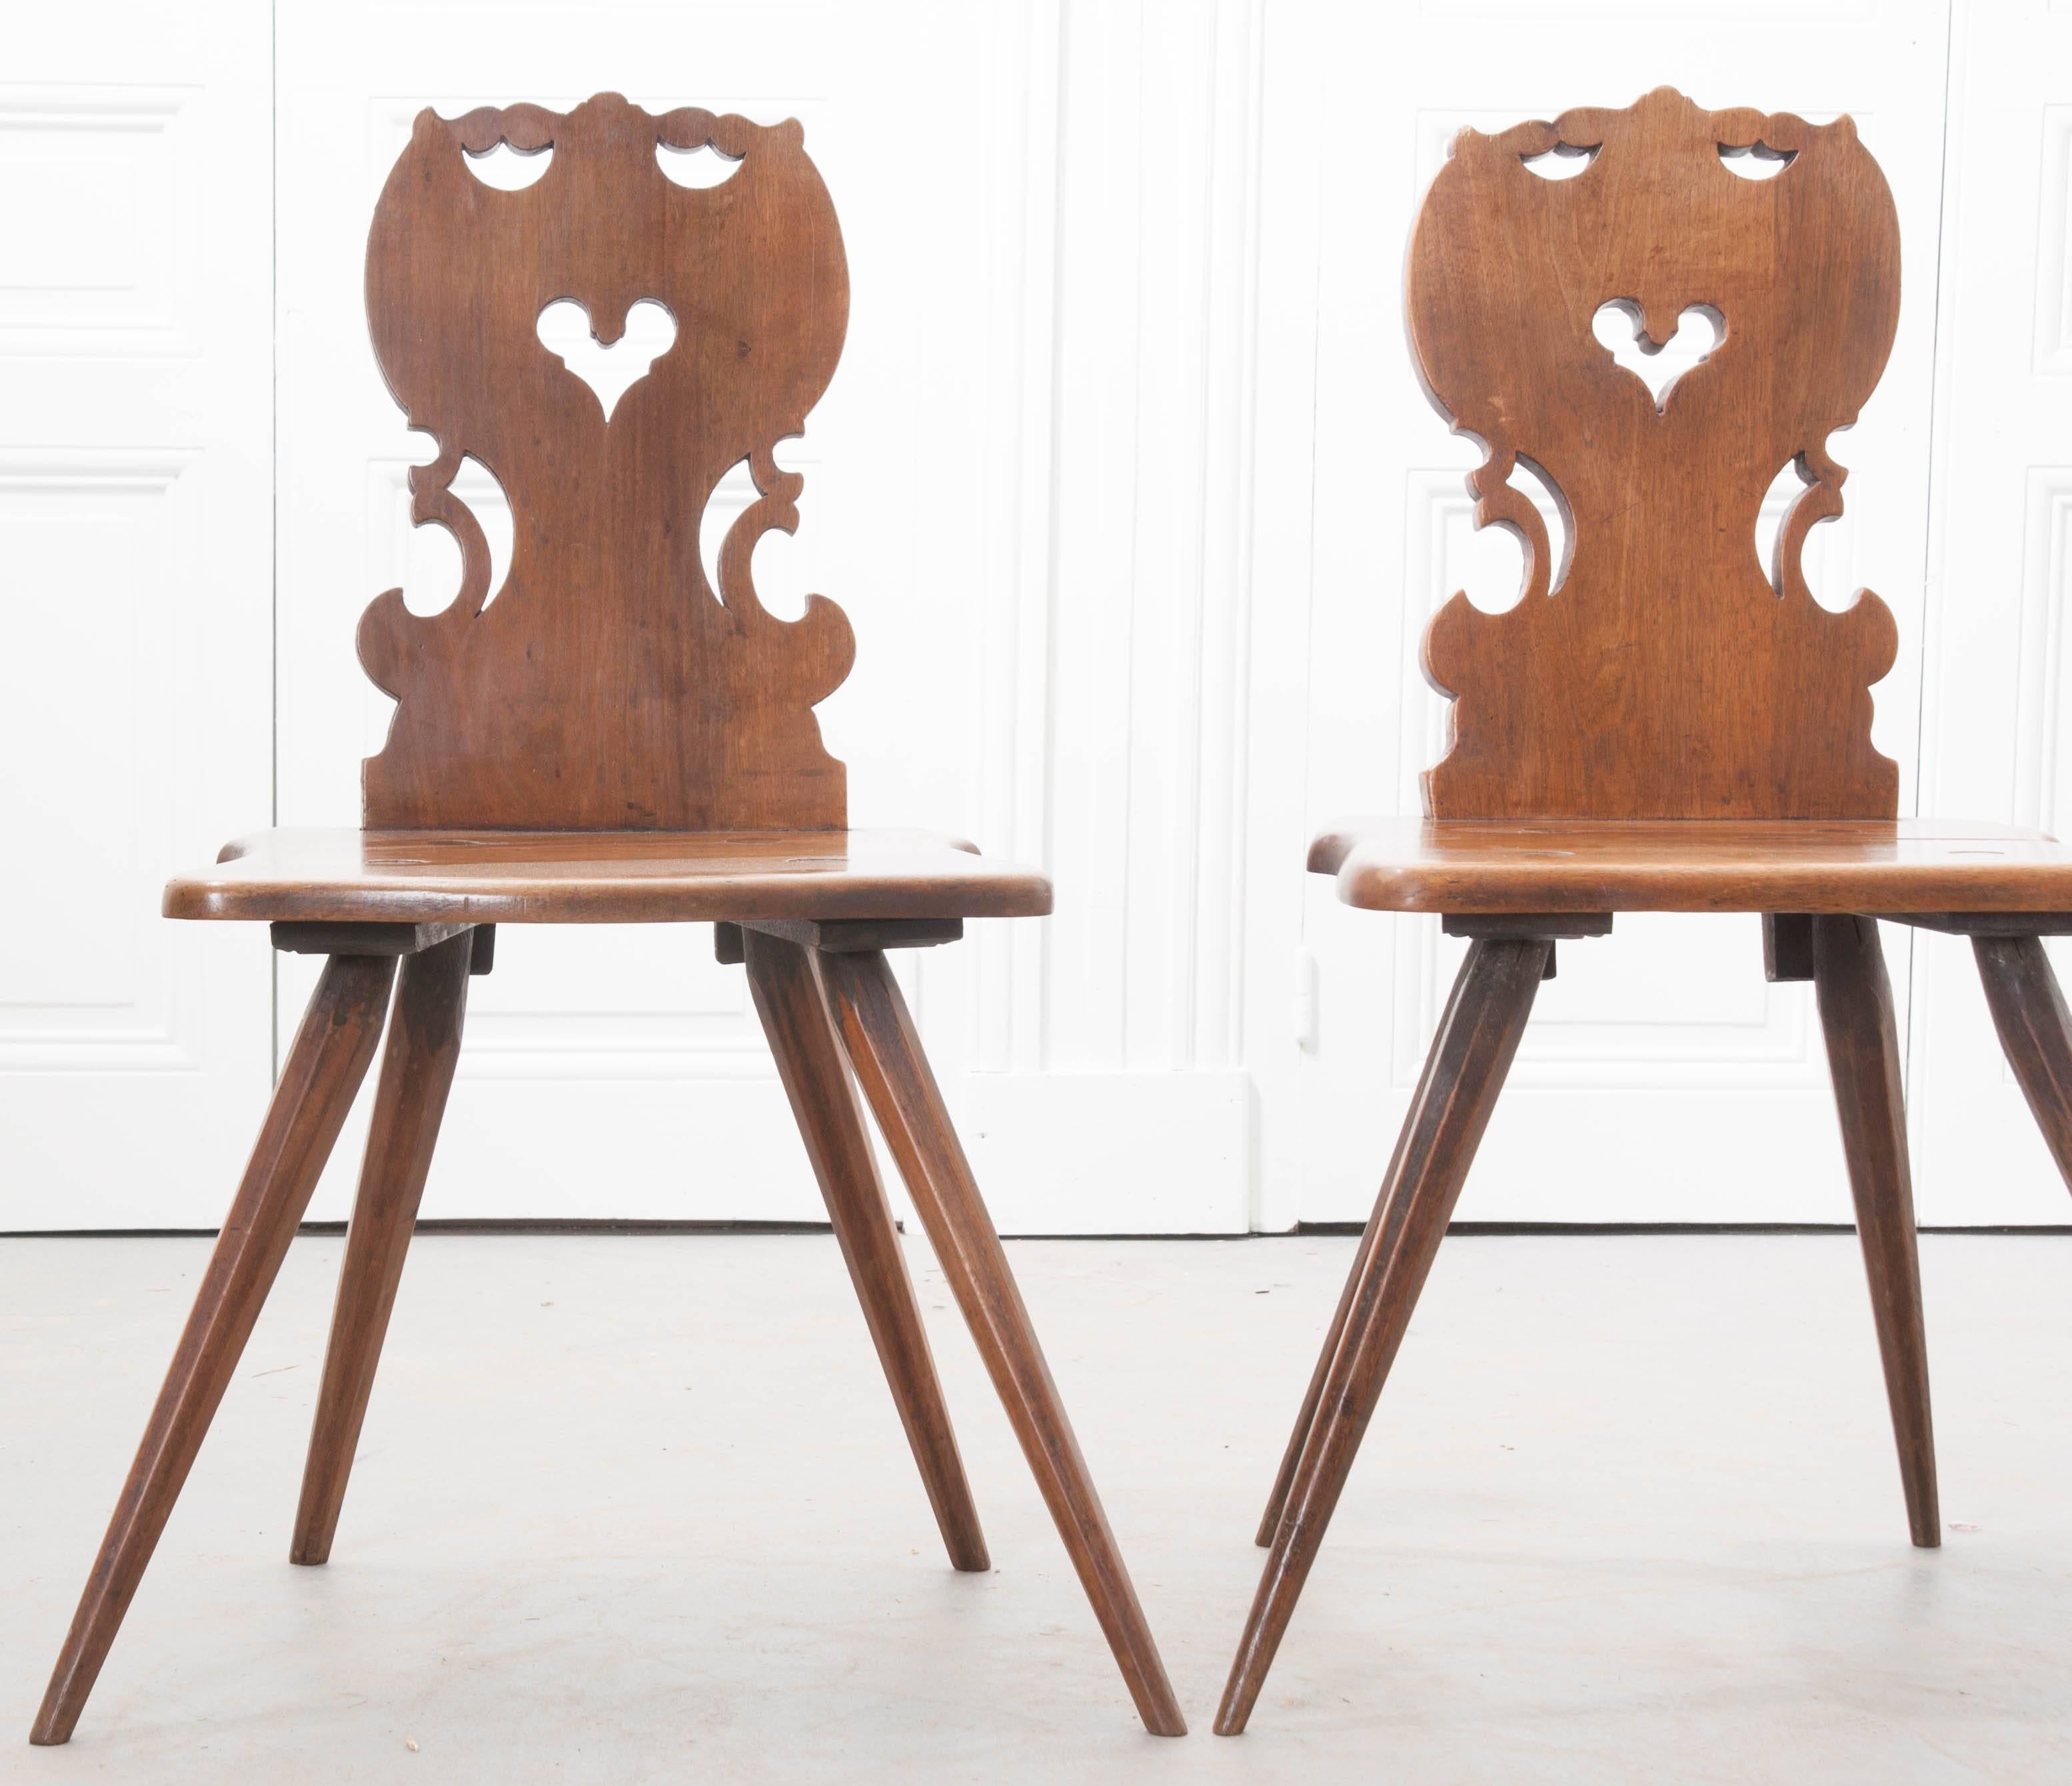 Une paire spectaculaire de chaises sculptées à la main de la région Alsace de la France:: vers 1820. Les dossiers sont percés:: avec des imageries en forme de cœur:: et fabriqués à partir de planches épaisses de noyer soigneusement sélectionnées.